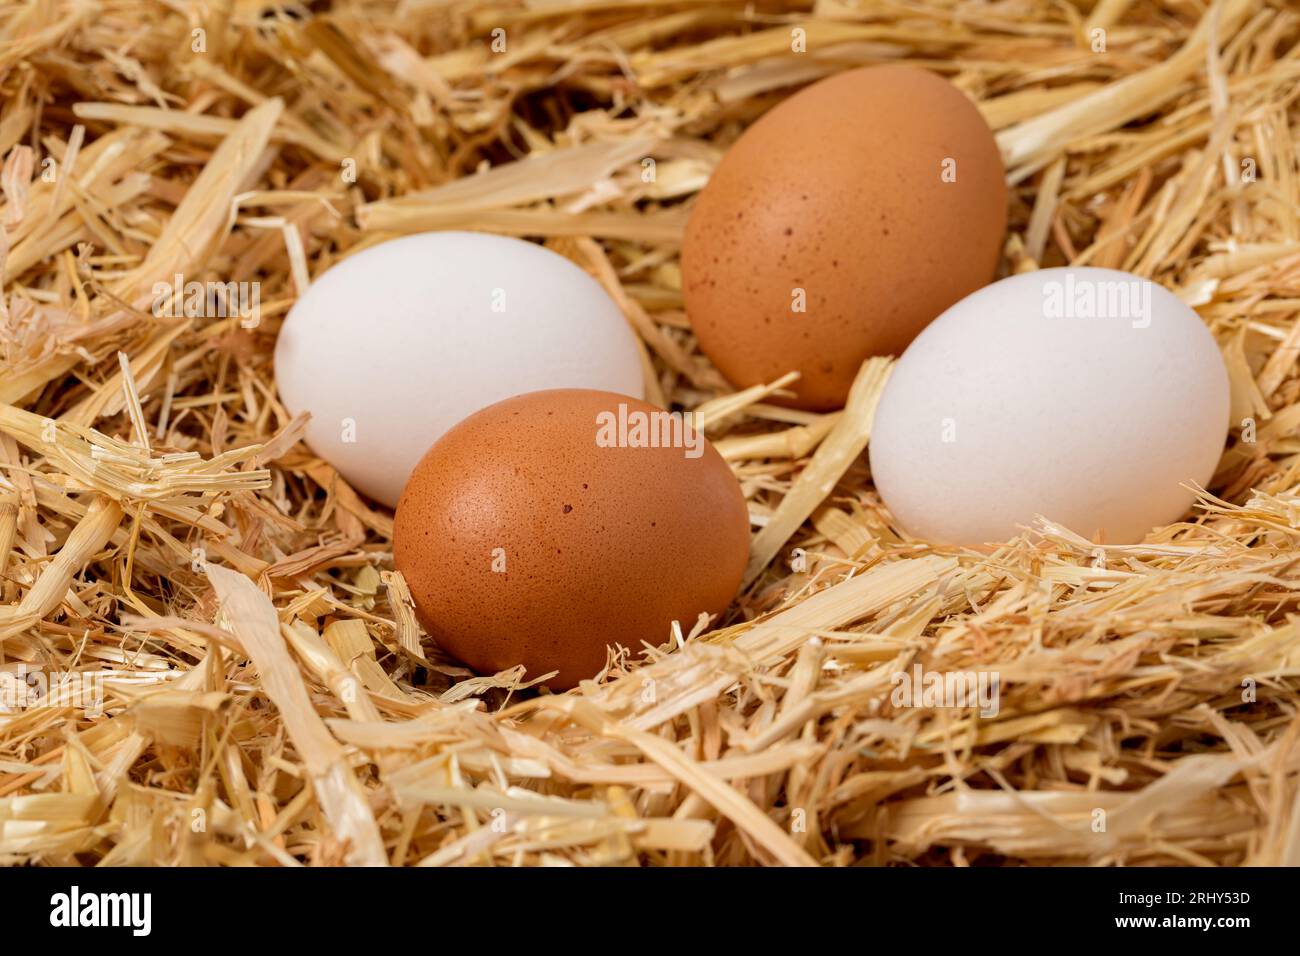 Huevos de pollo blanco y marrón frescos en nido de paja. Concepto de cultivo avícola orgánico, libre de jaula y de cría libre. Foto de stock